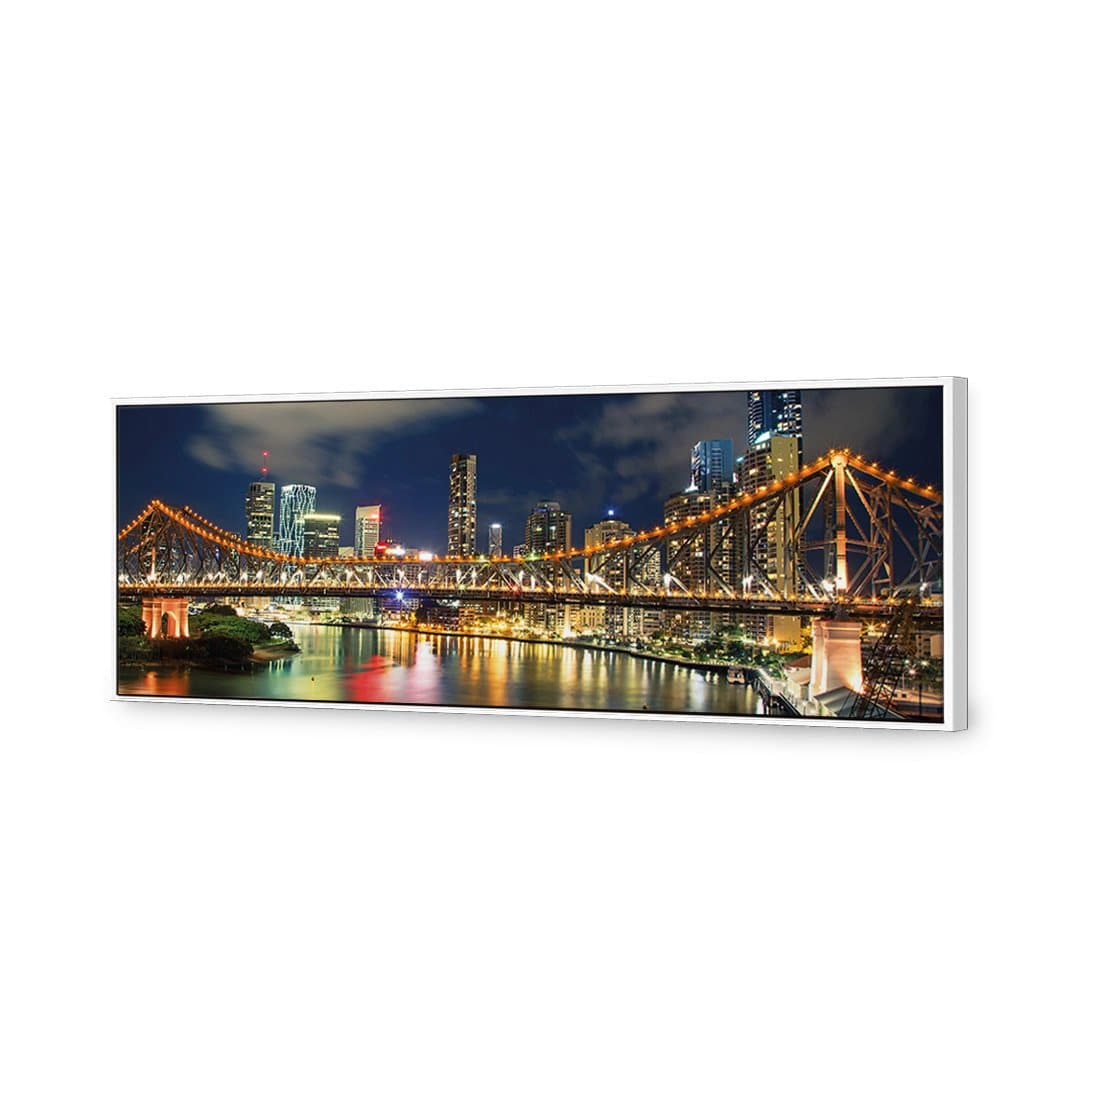 Story Bridge 2015 Canvas Art-Canvas-Wall Art Designs-60x20cm-Canvas - White Frame-Wall Art Designs